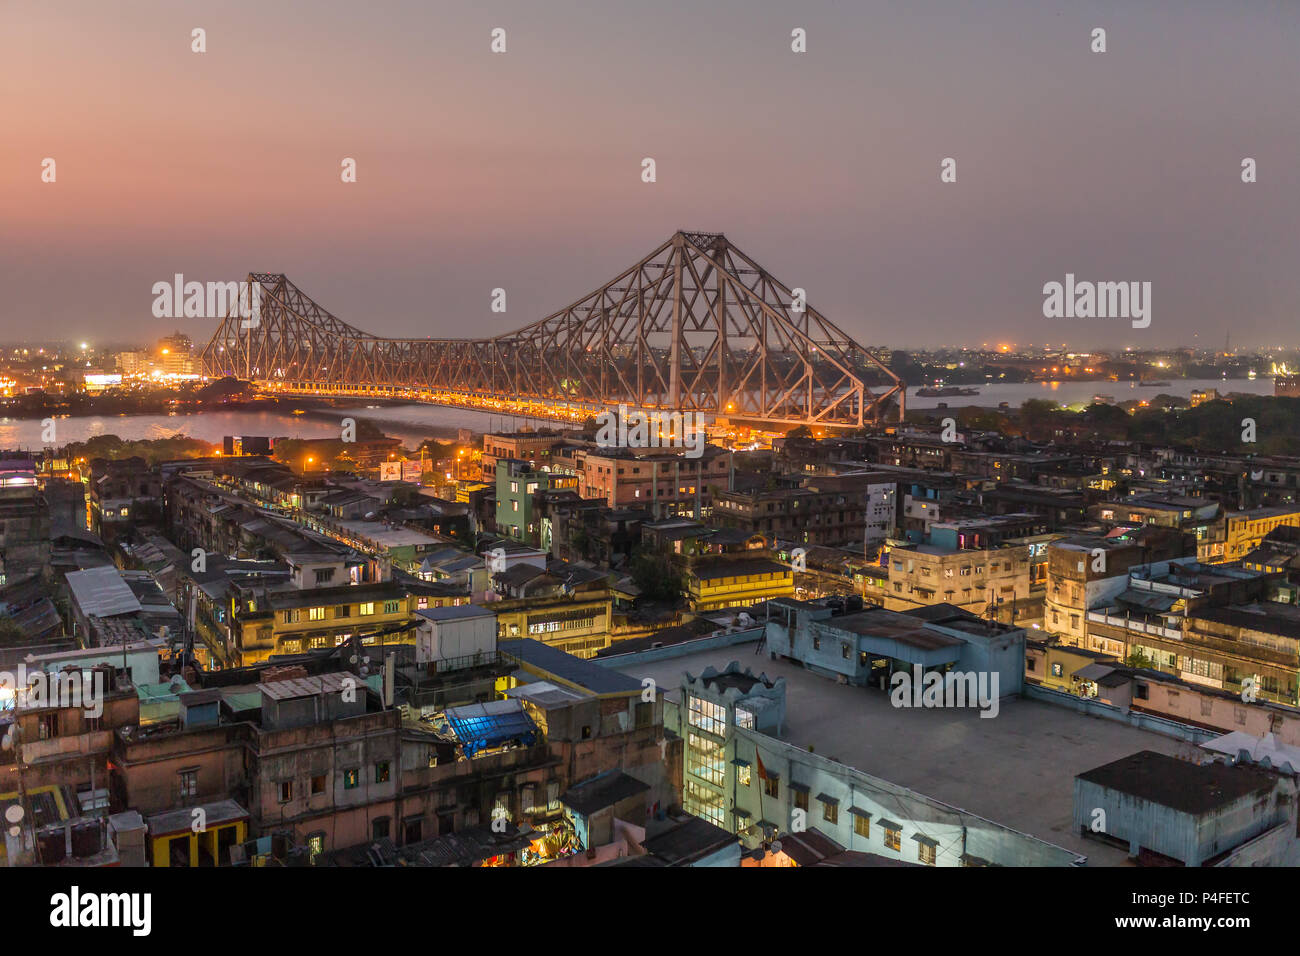 Belle vue sur la ville de Budapest avec un Howrah Bridge sur la rivière Hooghly au crépuscule. Banque D'Images